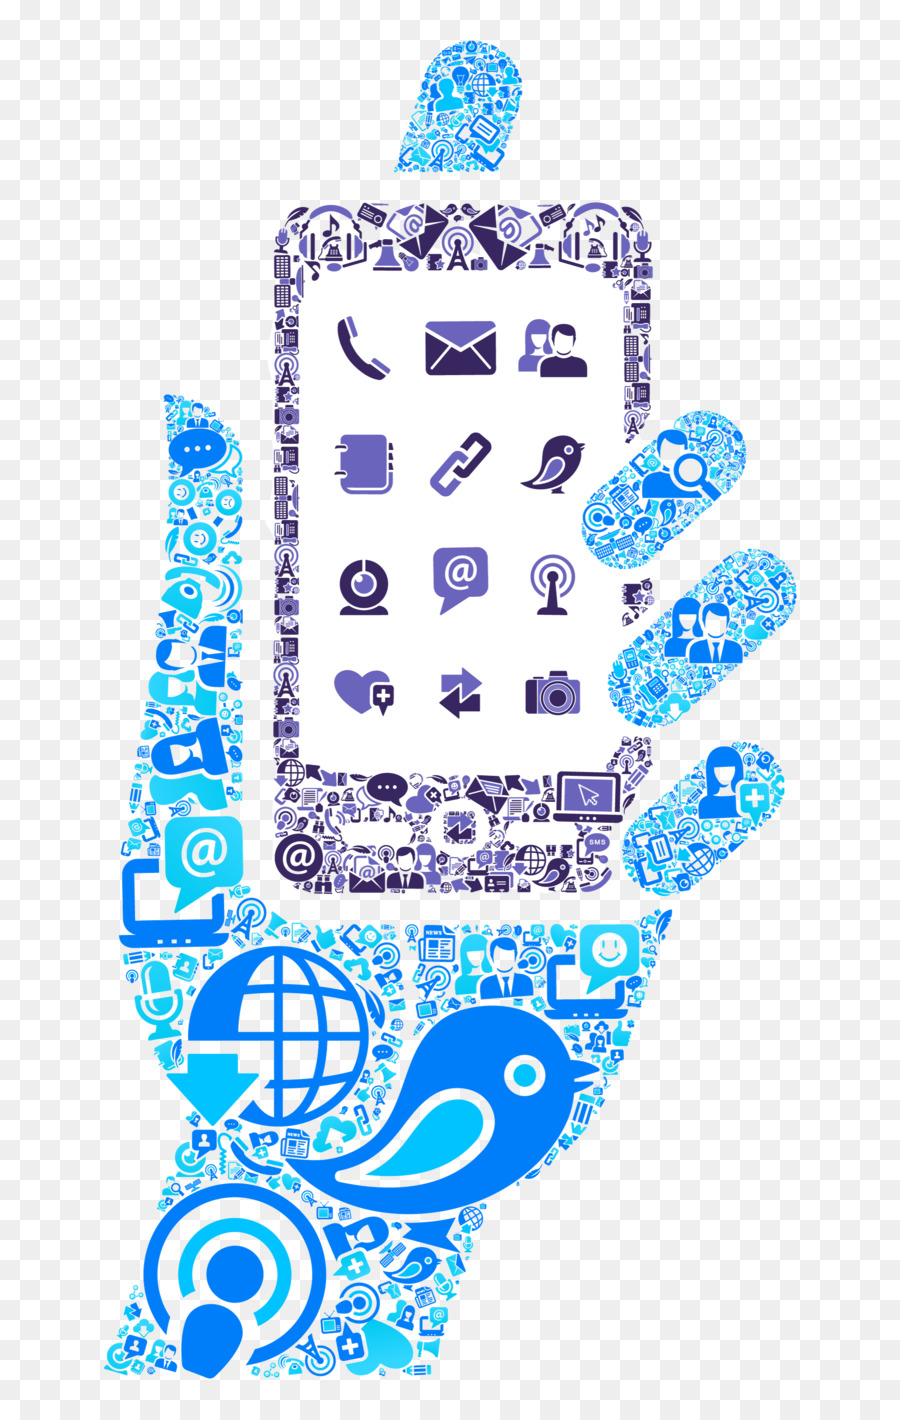 iPhone thông Tin công nghệ phát triển ứng dụng điện thoại Di động - công nghệ cao